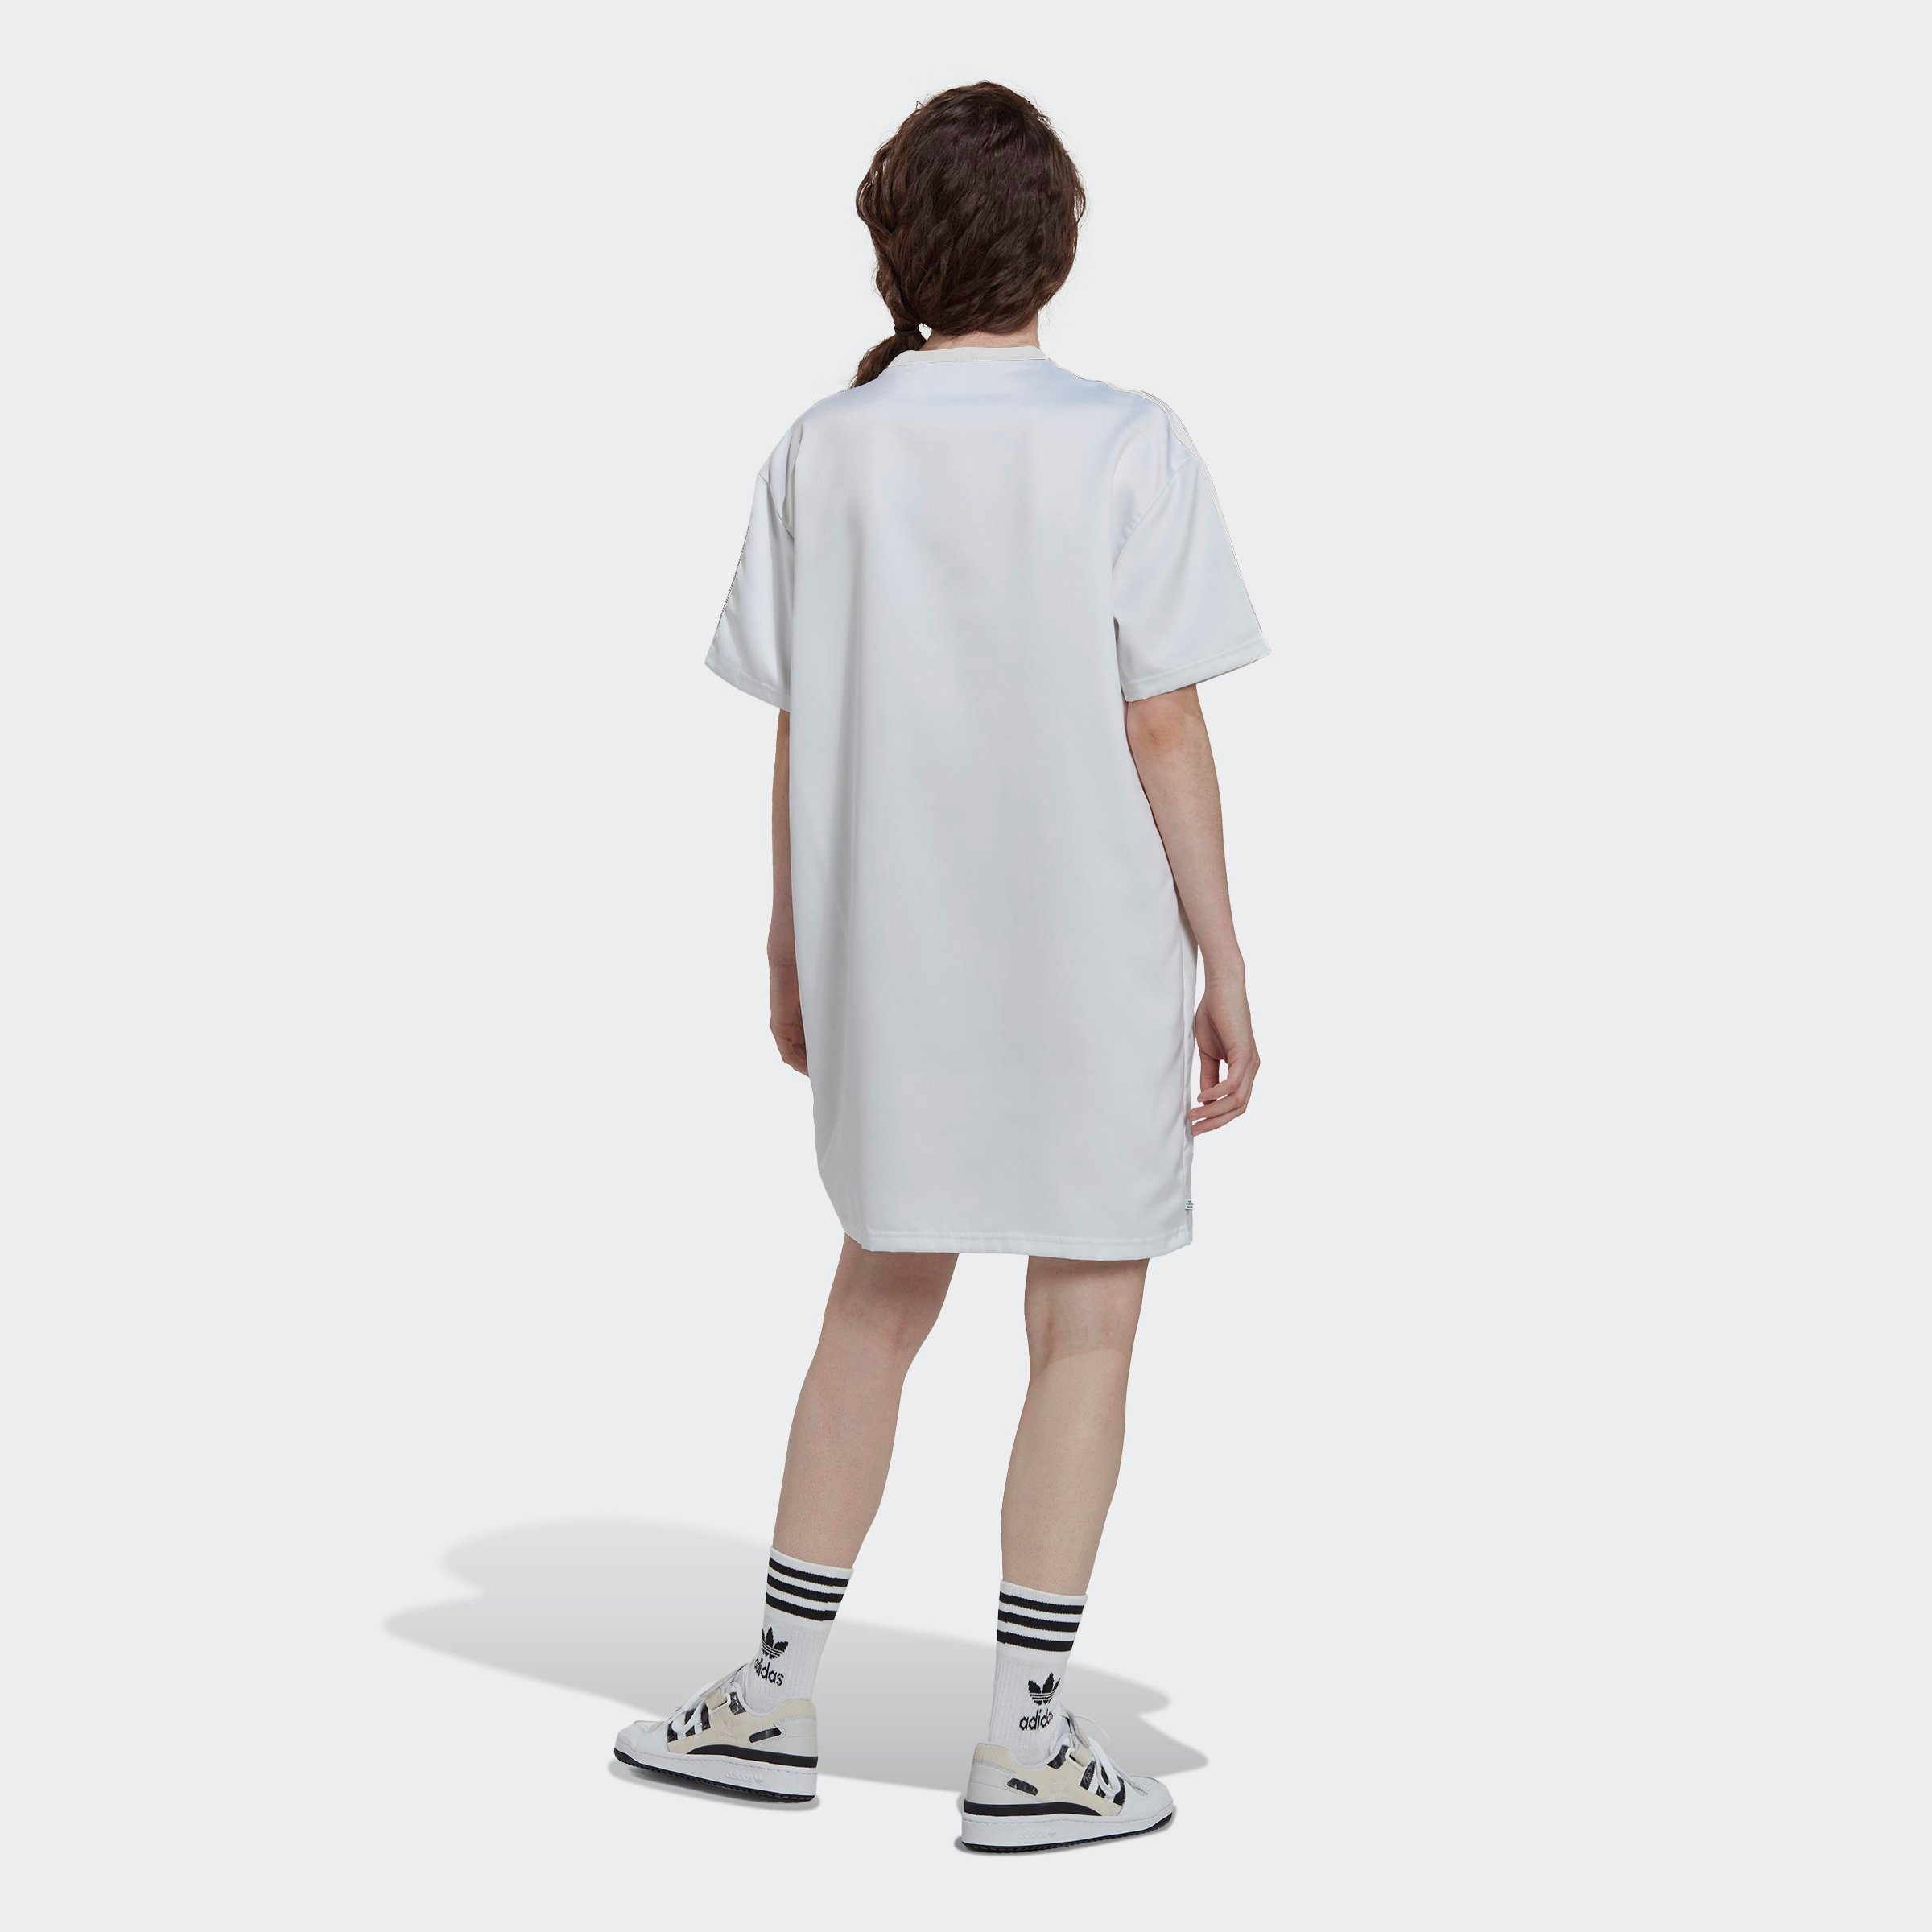 ORIGINAL LACED Originals Sommerkleid ALWAYS adidas WHITE -KLEID